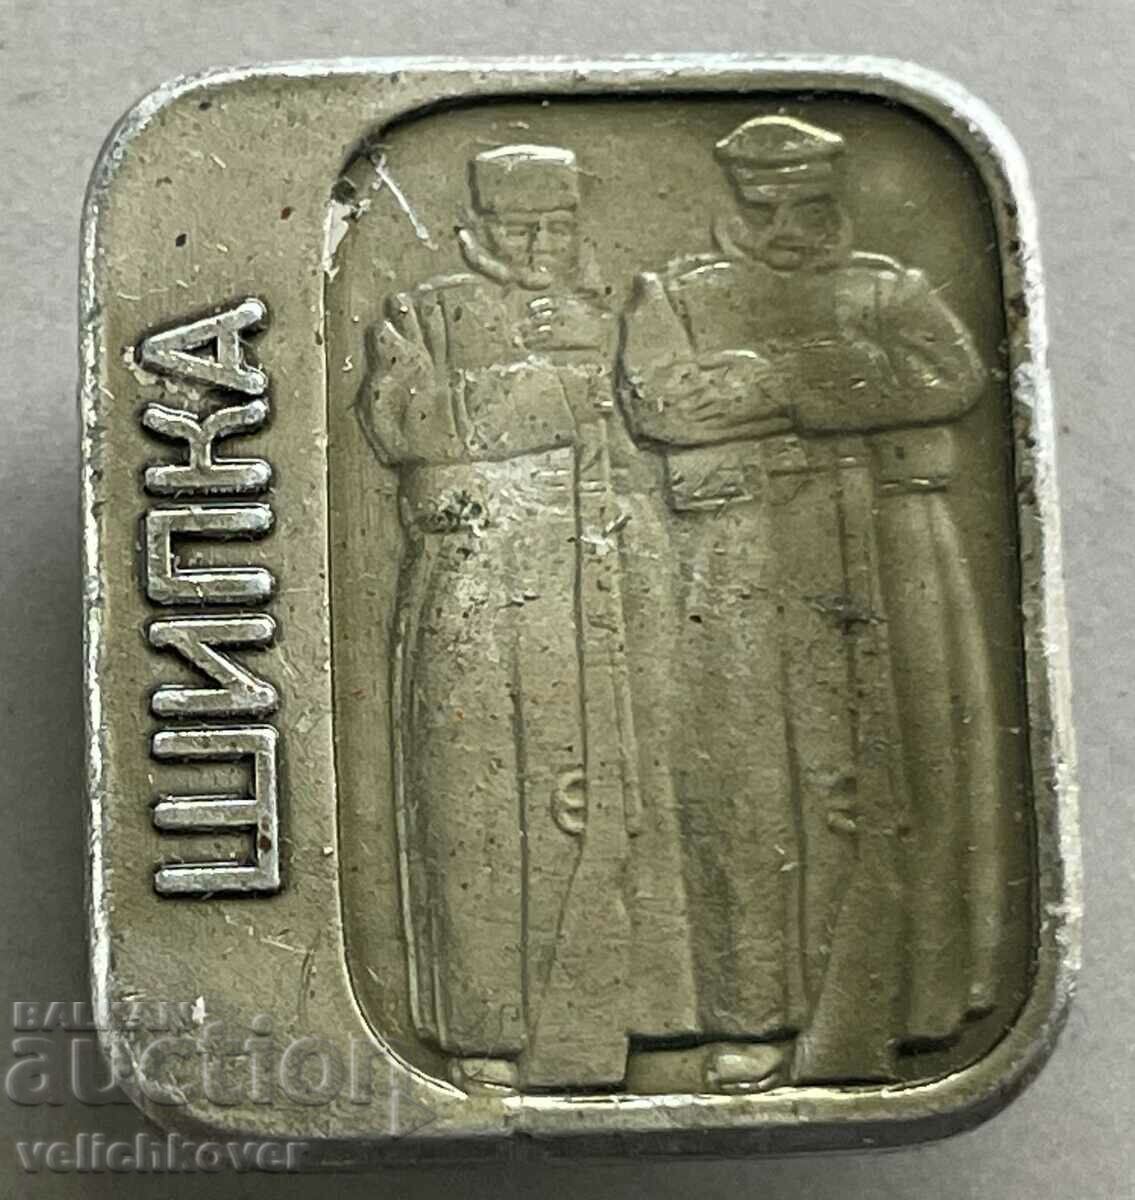 35173 Bulgaria badge Russian soldier and Bulgarian militiaman Shipka